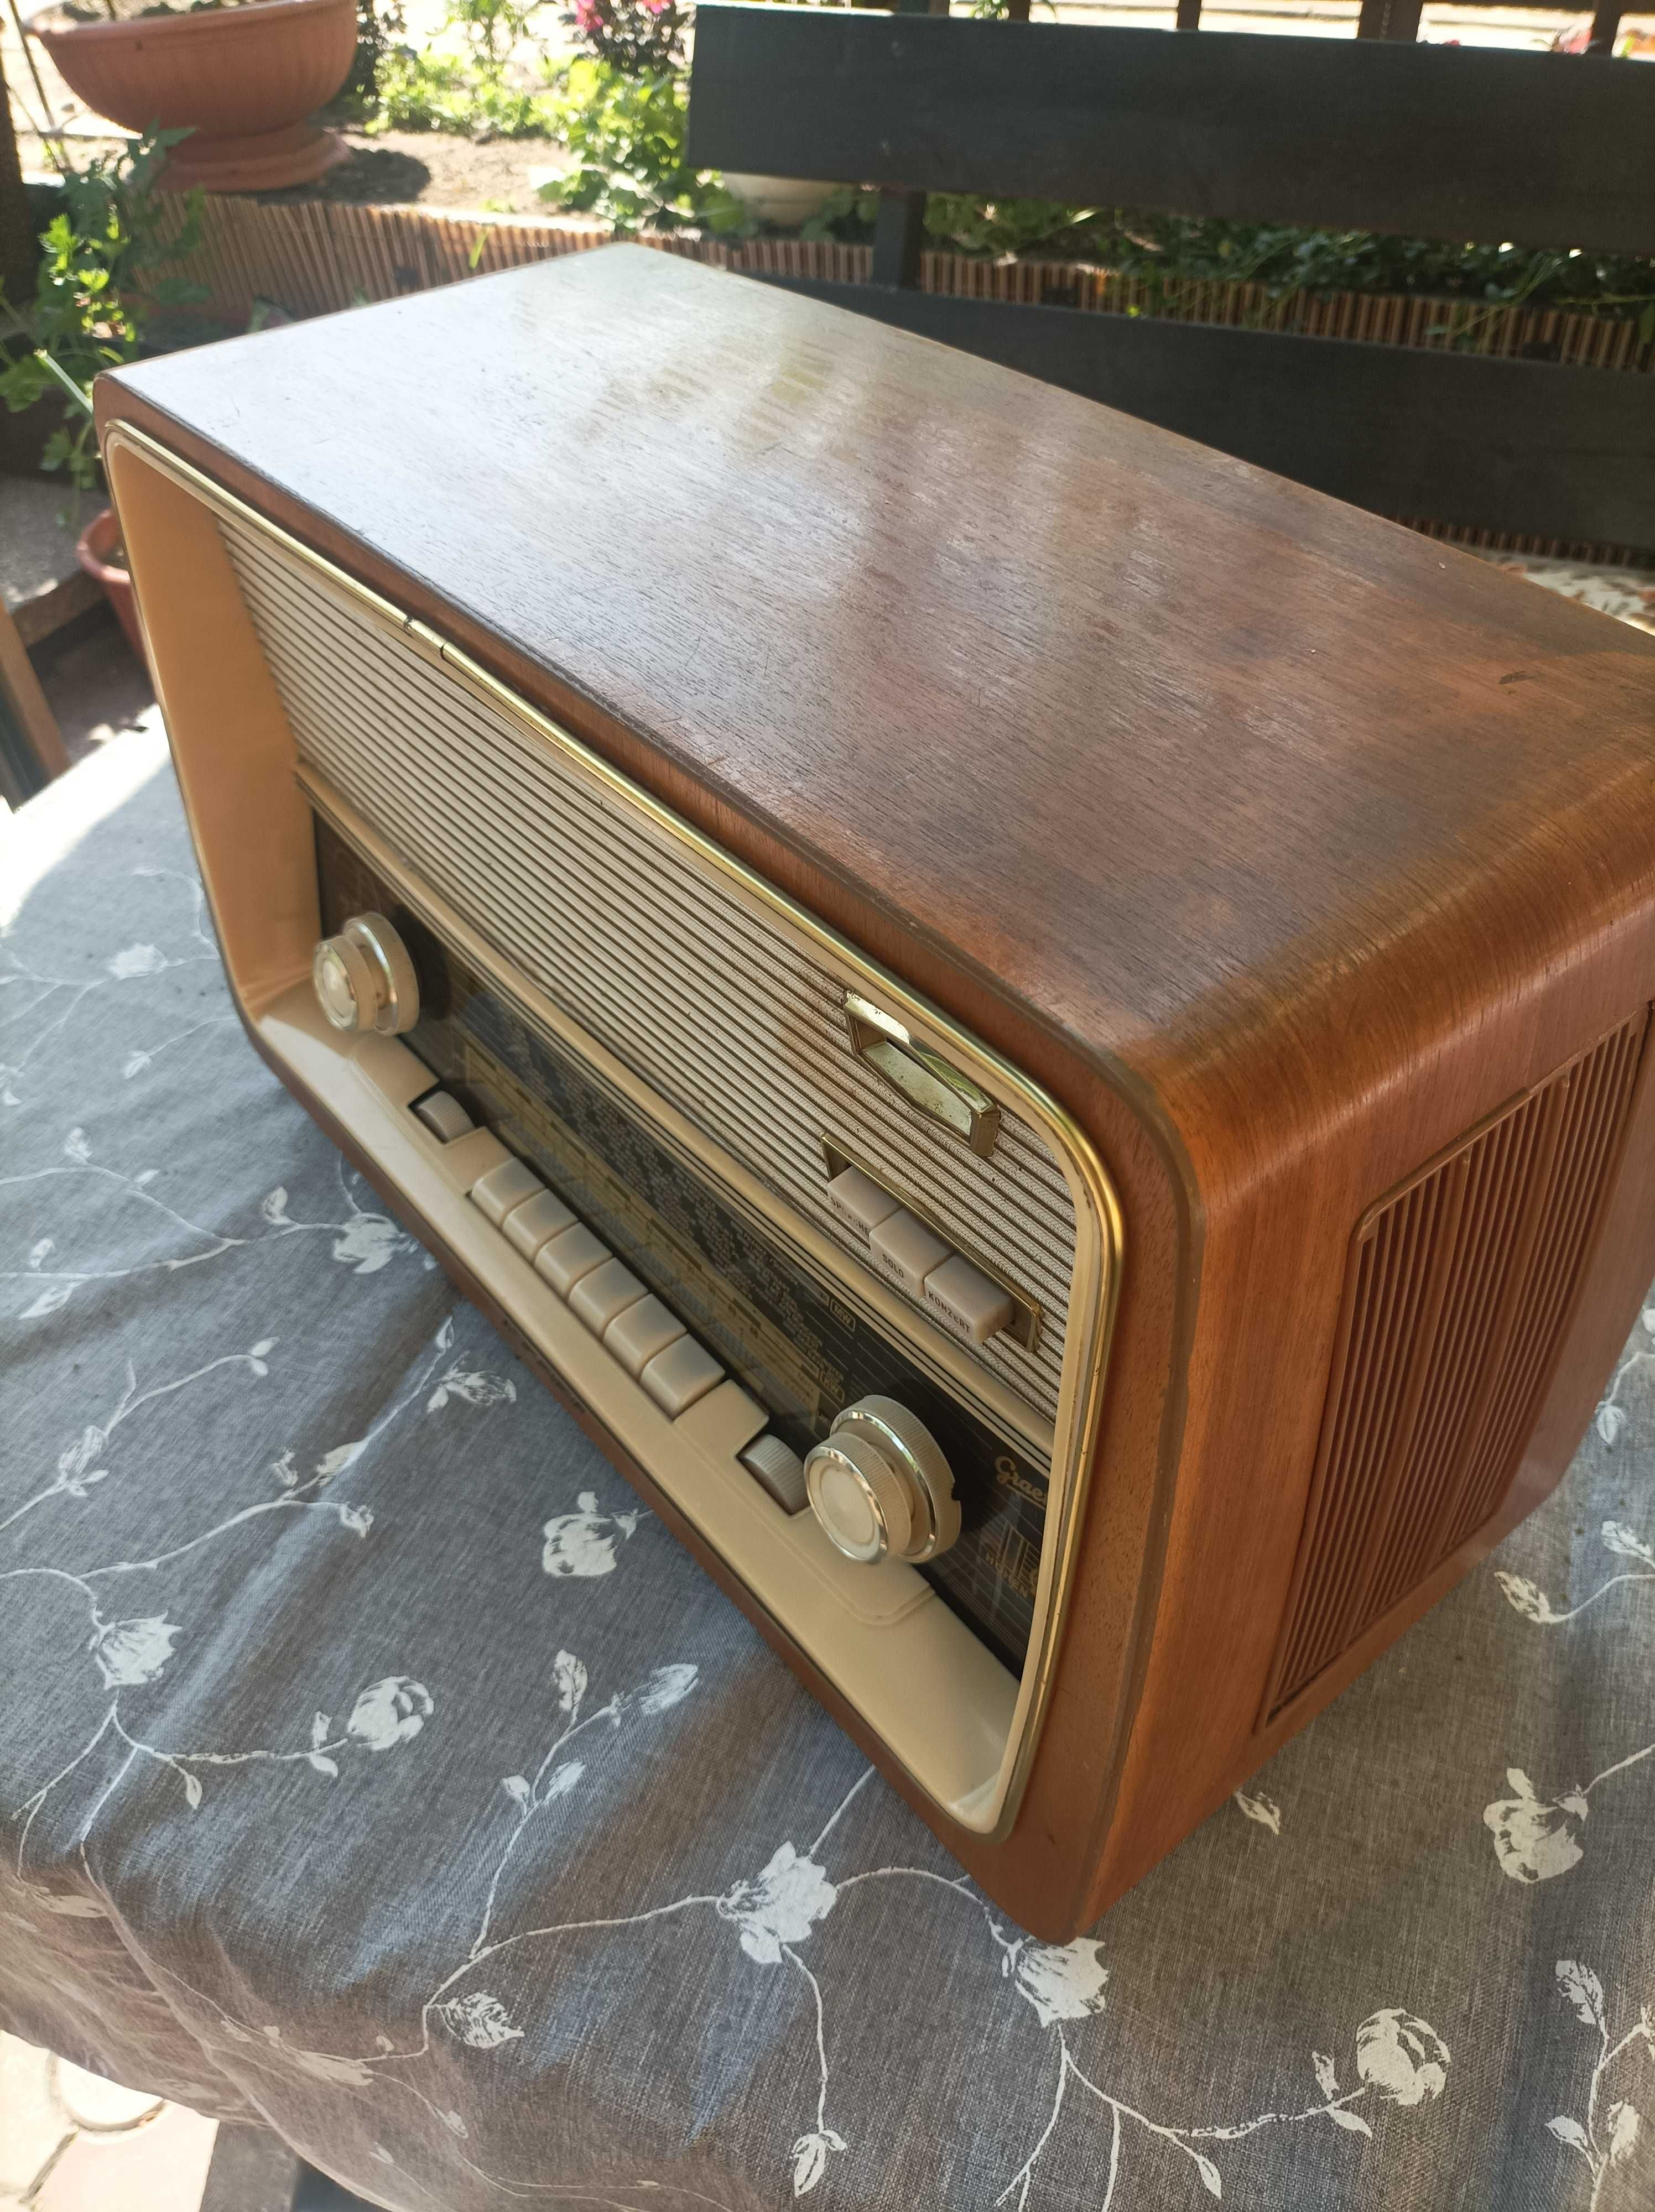 Graetz Polka 813 Raumklang-Vollsuper radio lampowe vintage